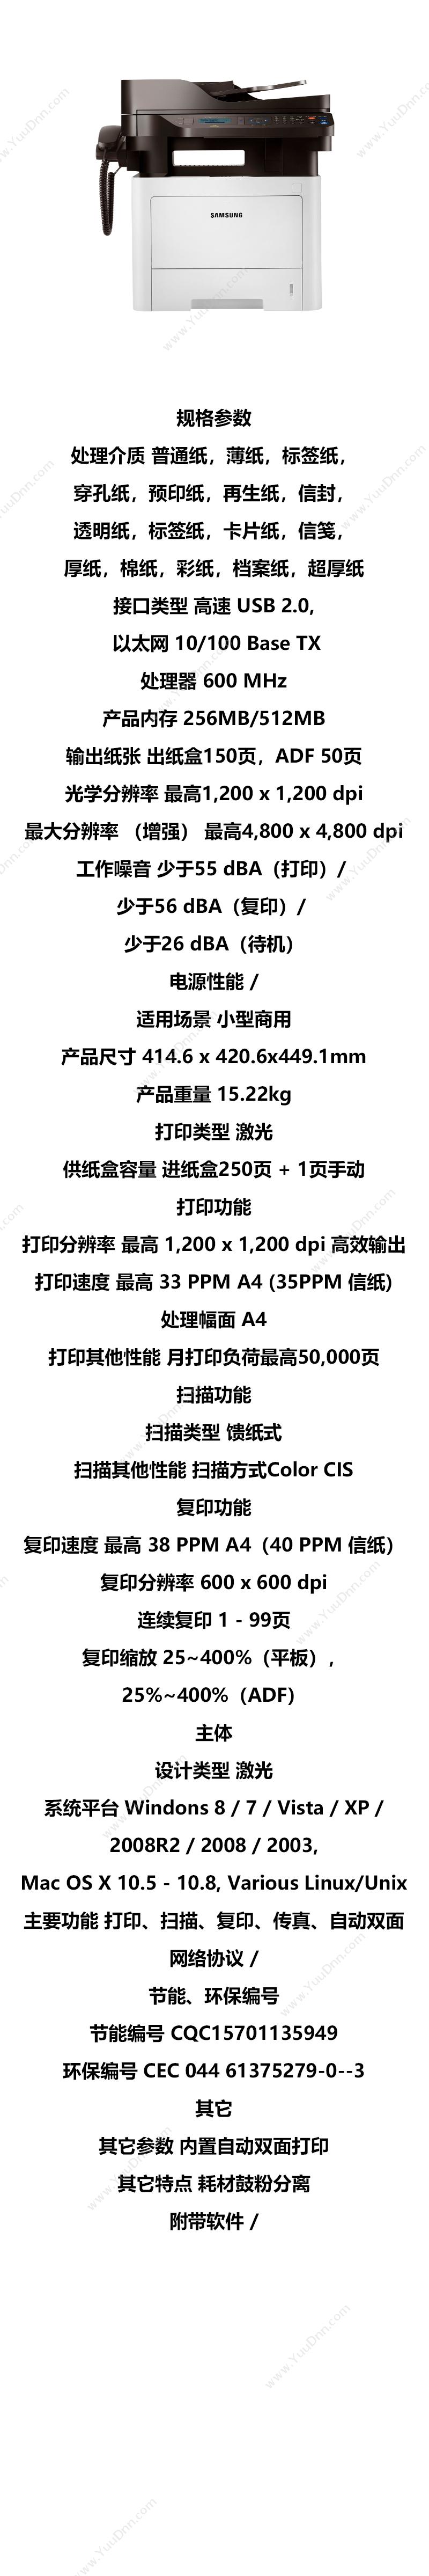 三星 Samsung ProXpressM3375HD A4(黑白) A4黑白喷墨多功能一体机